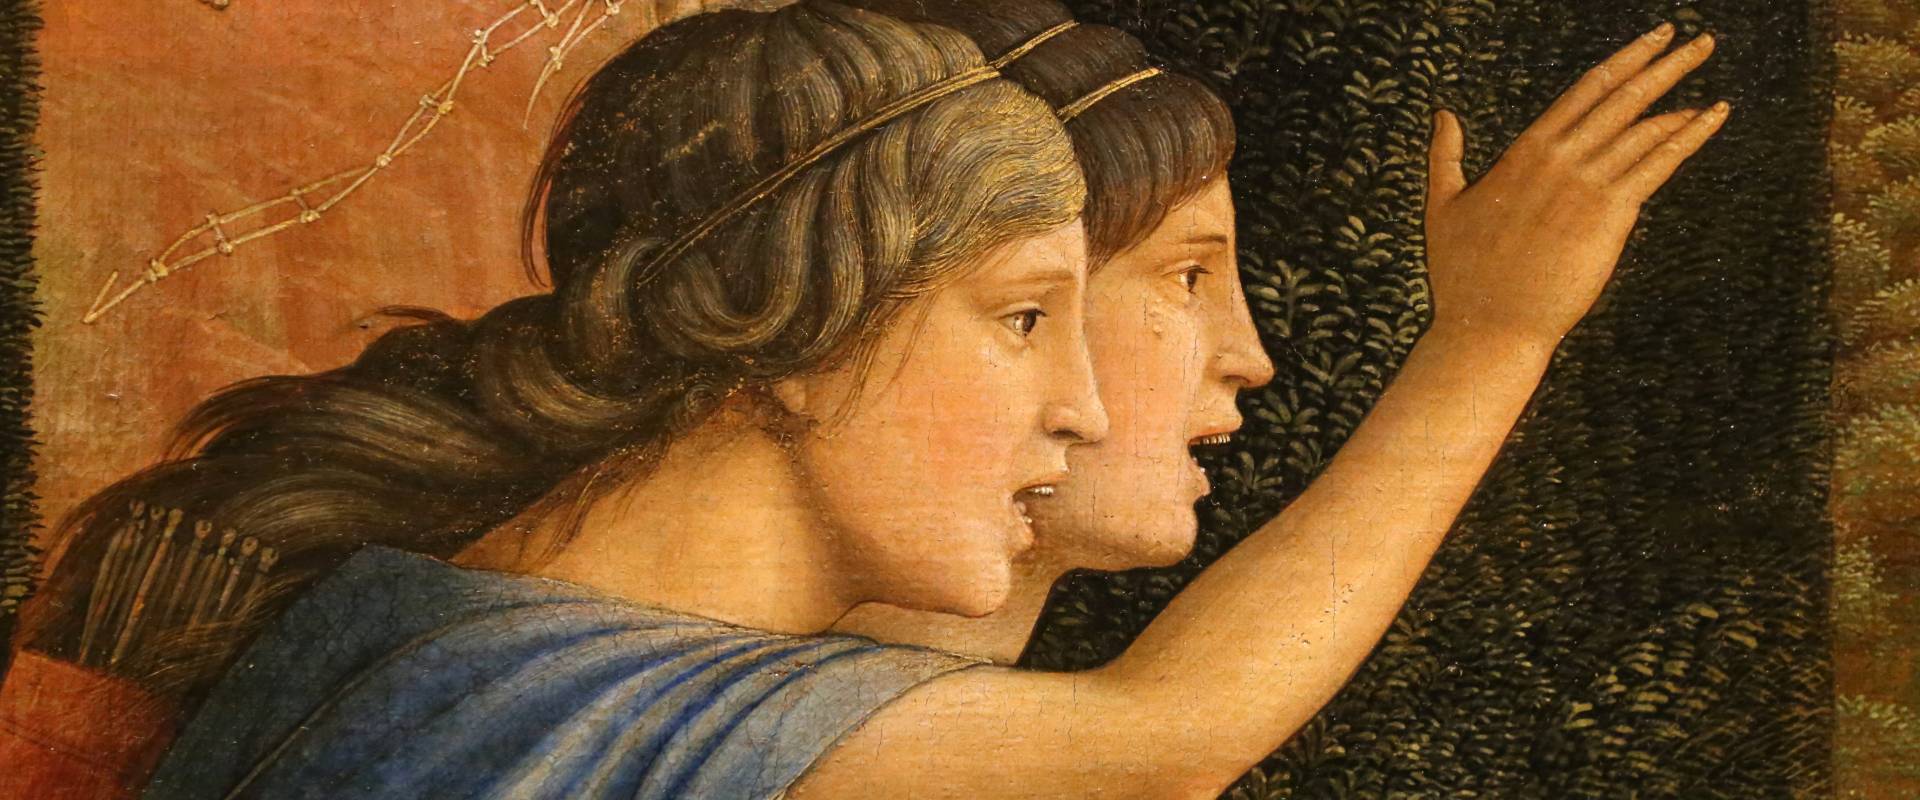 Andrea mantegna, minerva scaccia i vizi dal giardino delle virtù, 1497-1502 ca. (louvre) 25 foto di Sailko